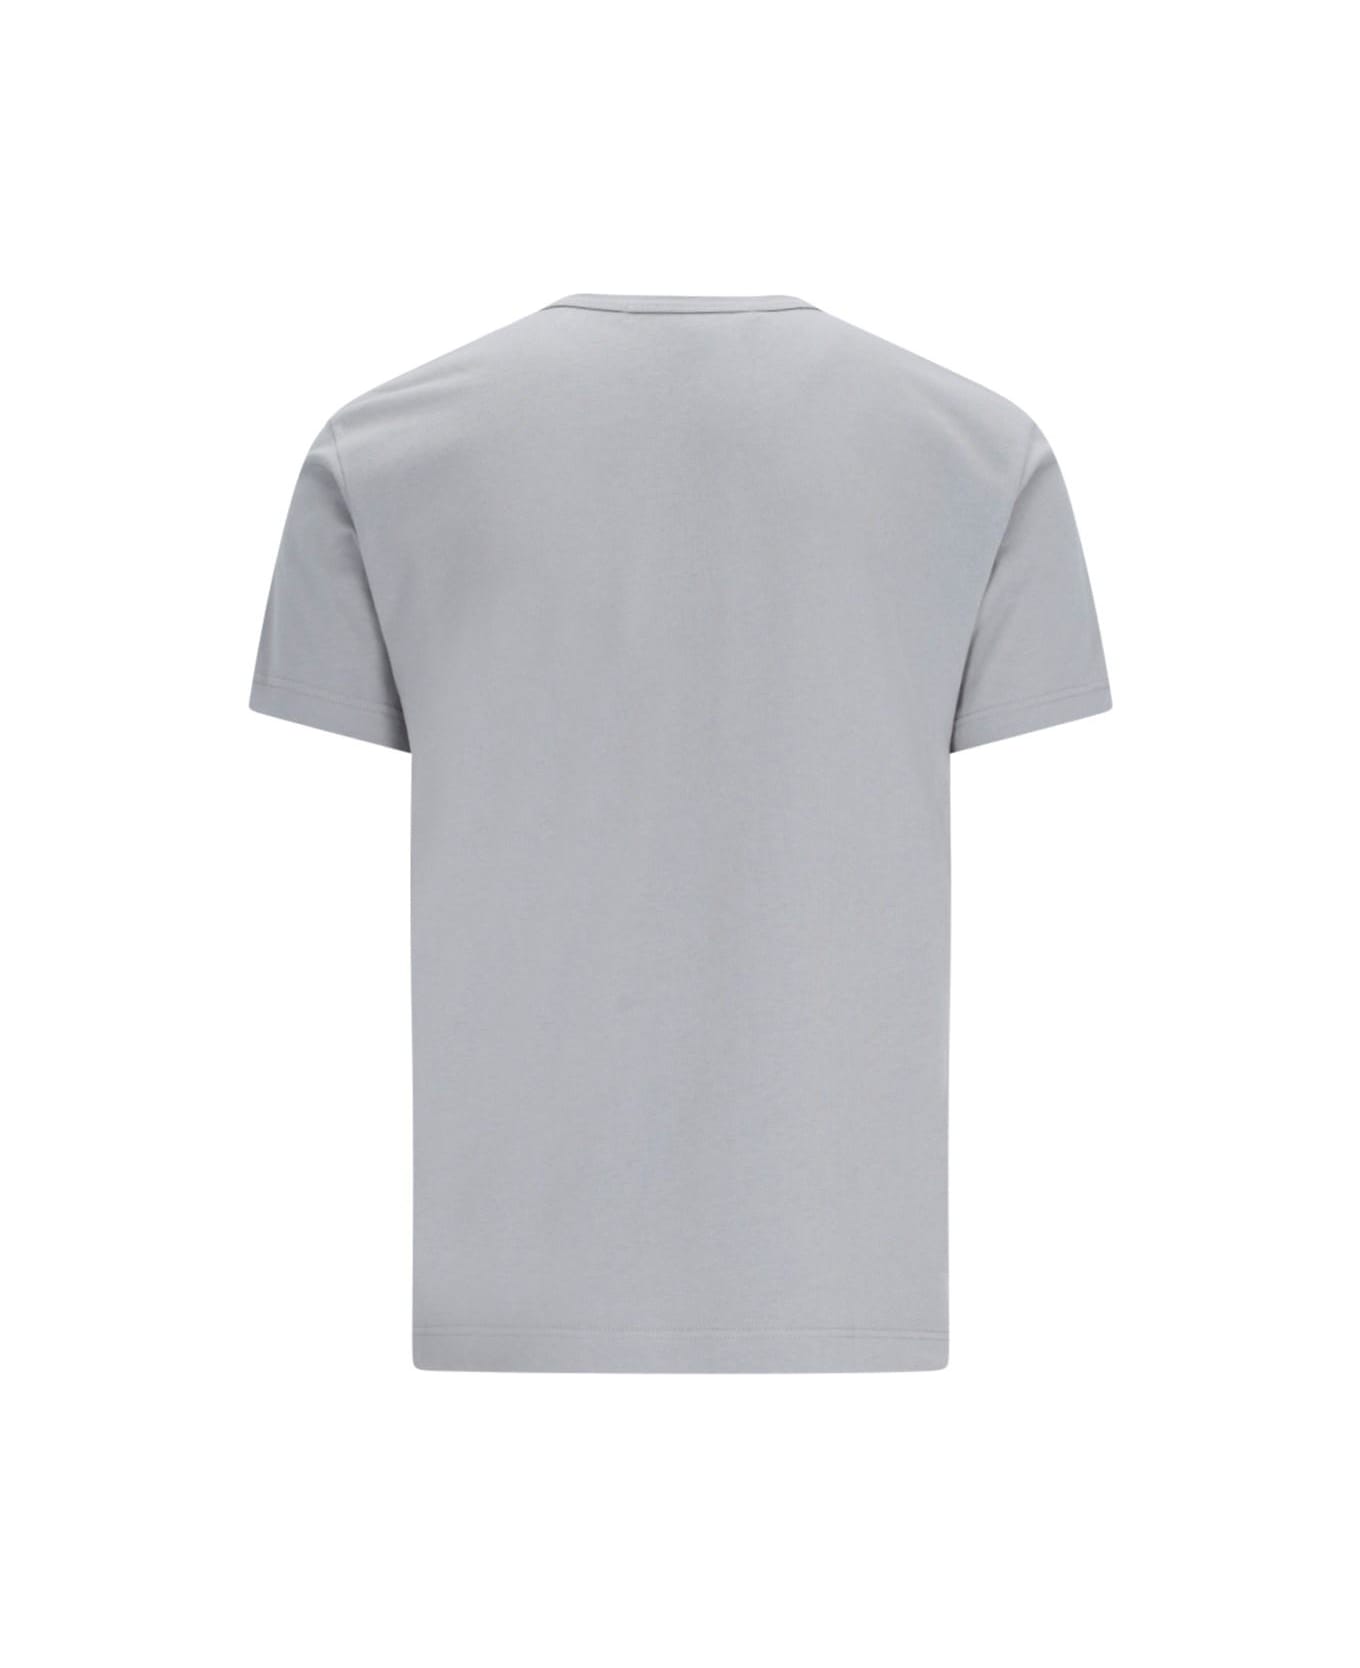 Comme des Garçons Shirt Logo T-shirt - Grey シャツ